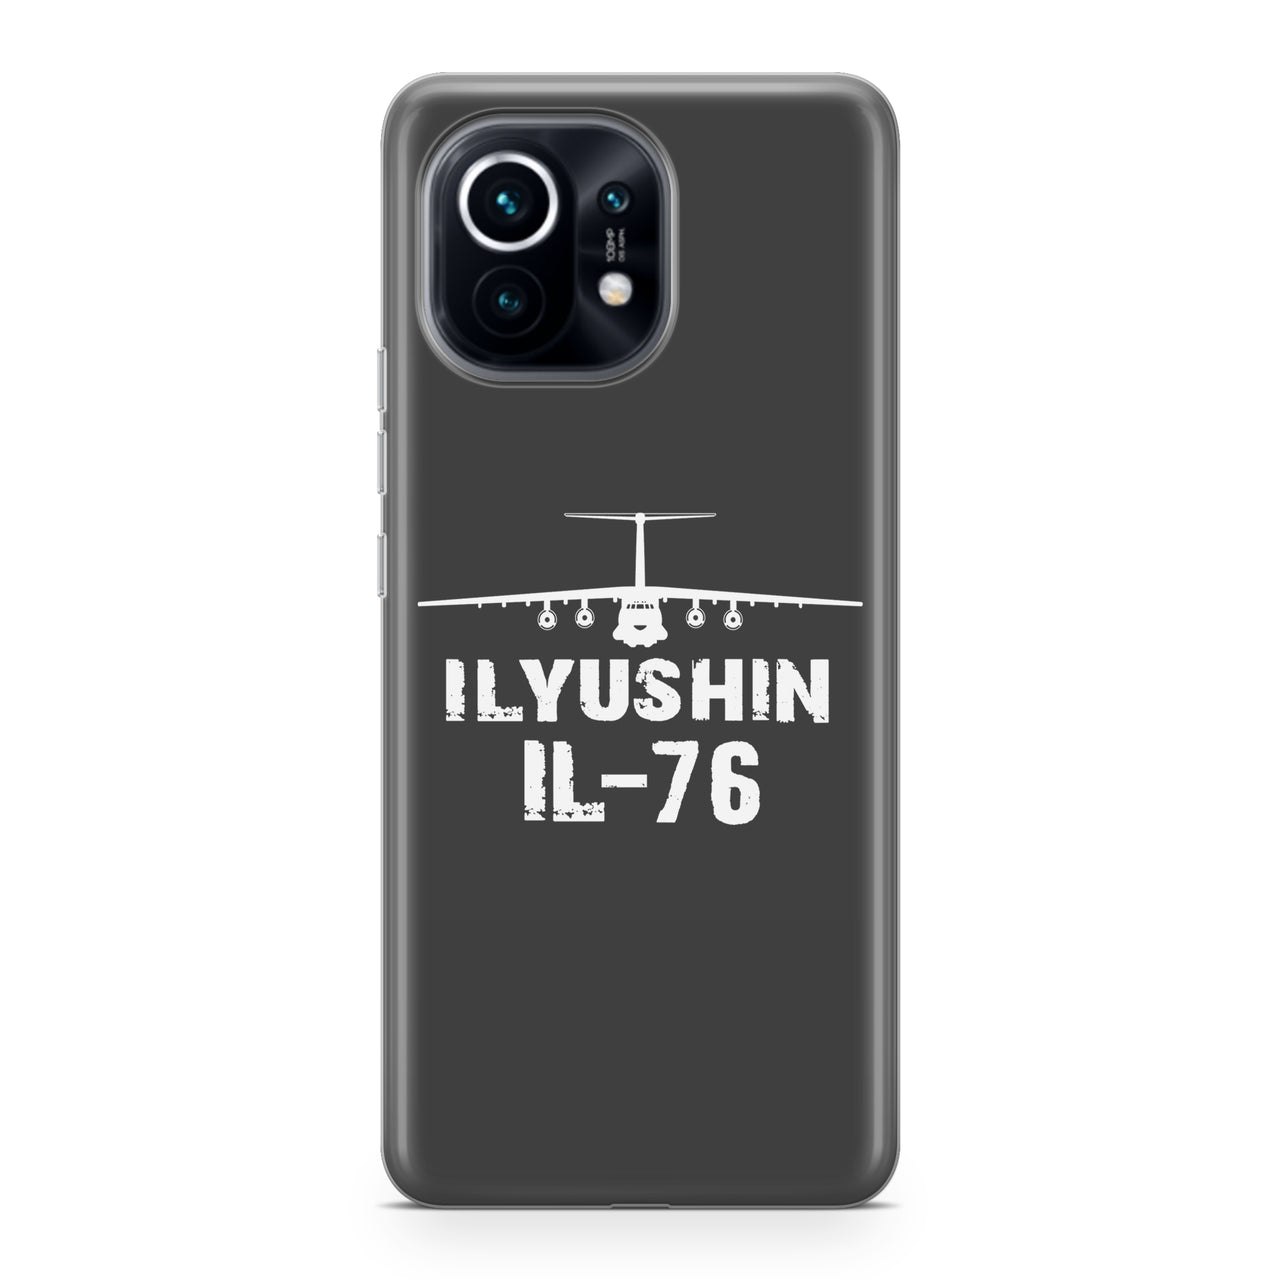 ILyushin IL-76 & Plane Designed Xiaomi Cases